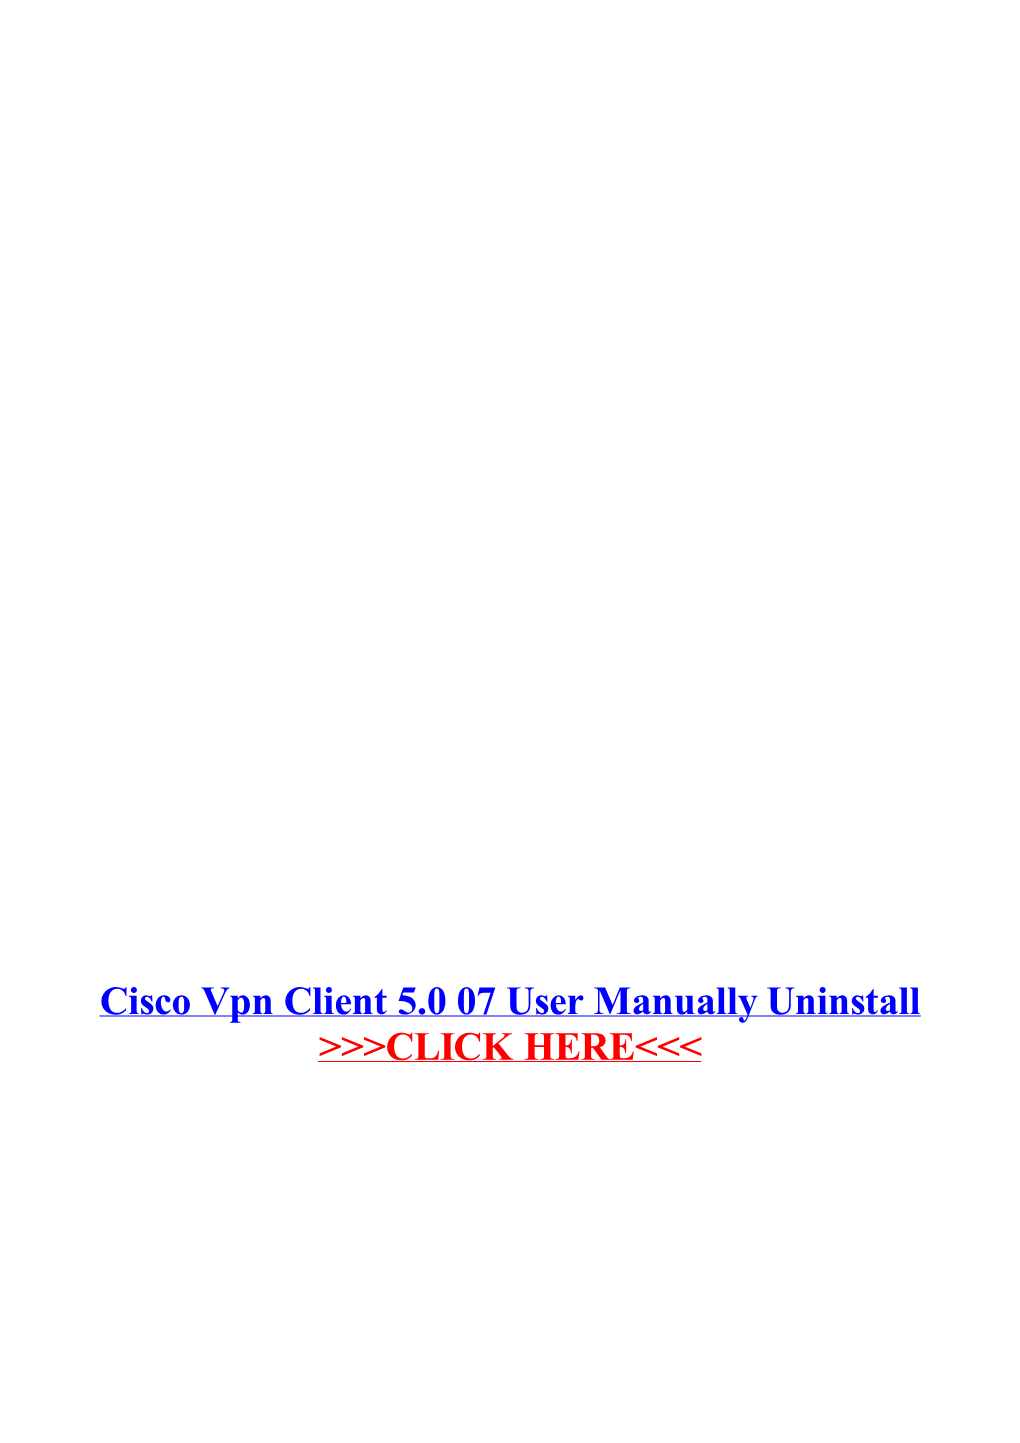 Cisco Vpn Client 5.0 07 User Manually Uninstall.Pdf